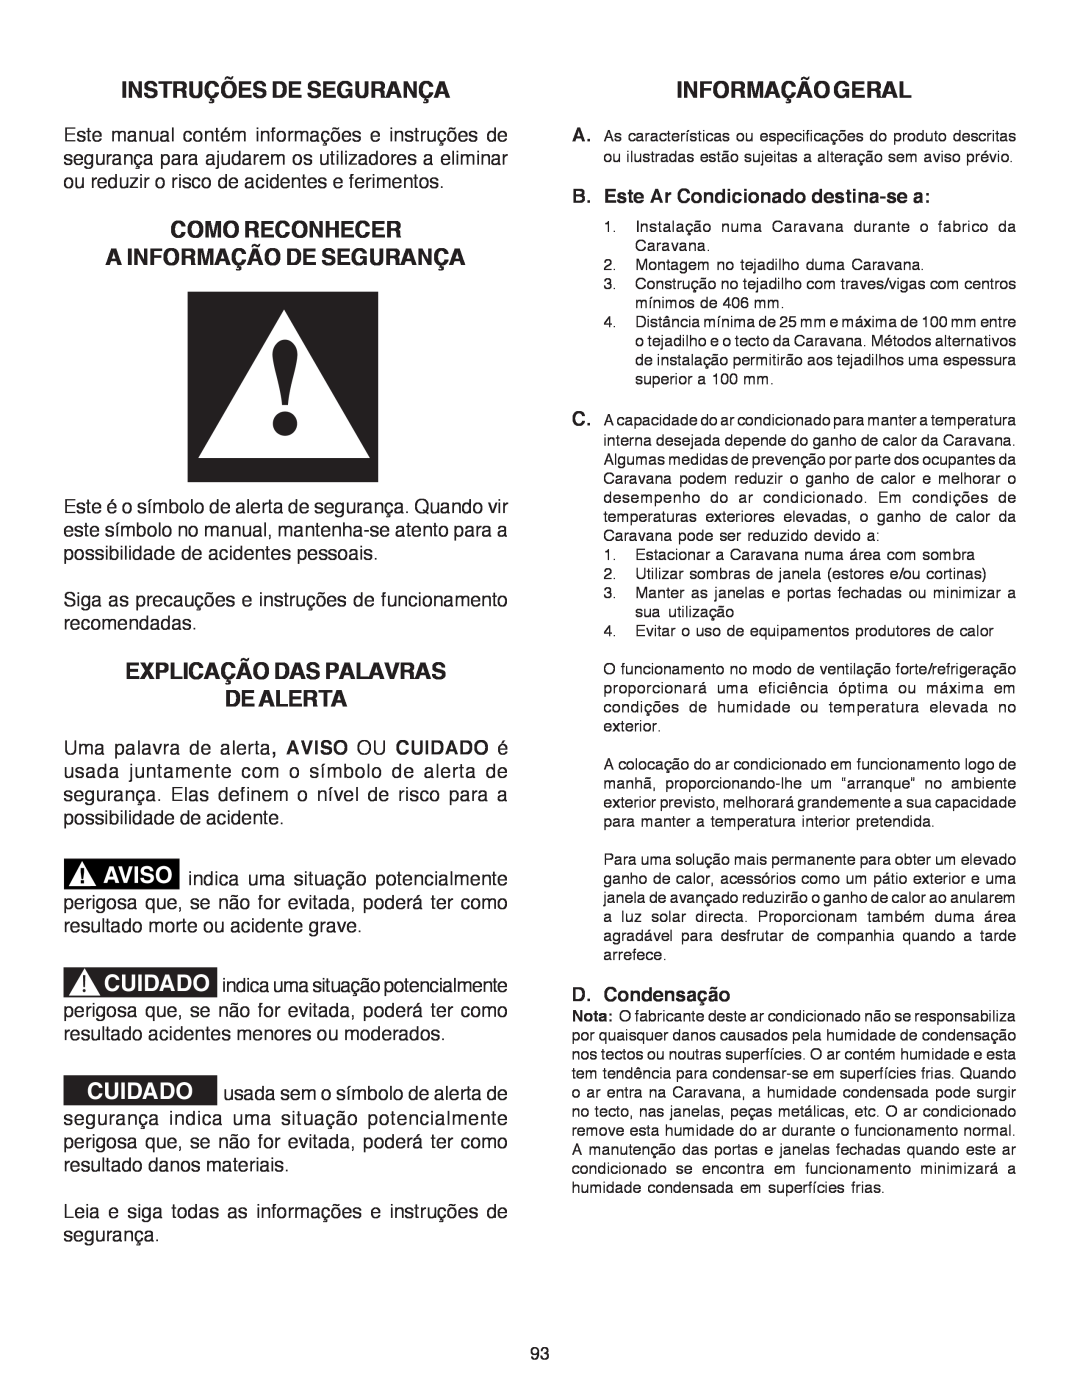 Dometic B3200 manual Instruções De Segurança, Como Reconhecer A Informação De Segurança, Explicação Das Palavras De Alerta 